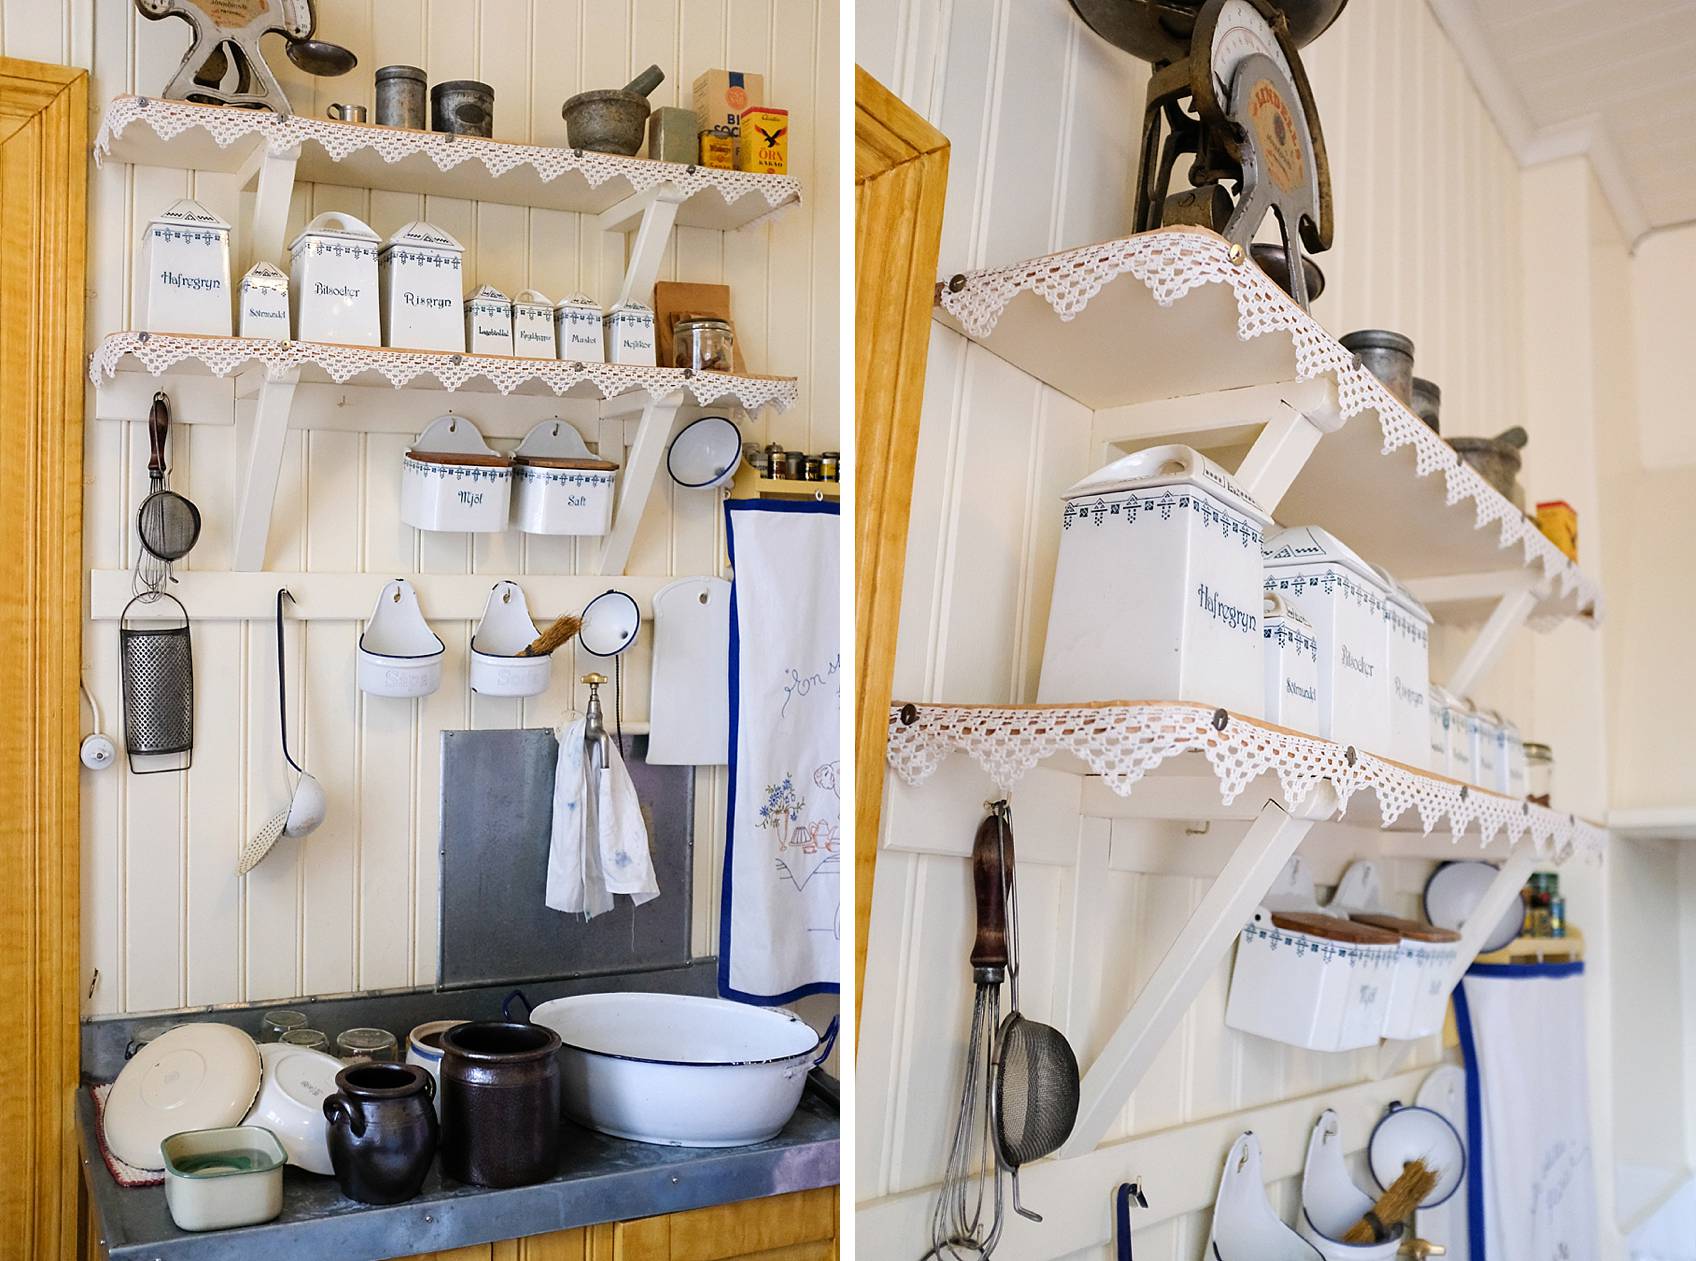 skansen stockholm cottage living decor for inspiration, inside cottage shelving kitchen